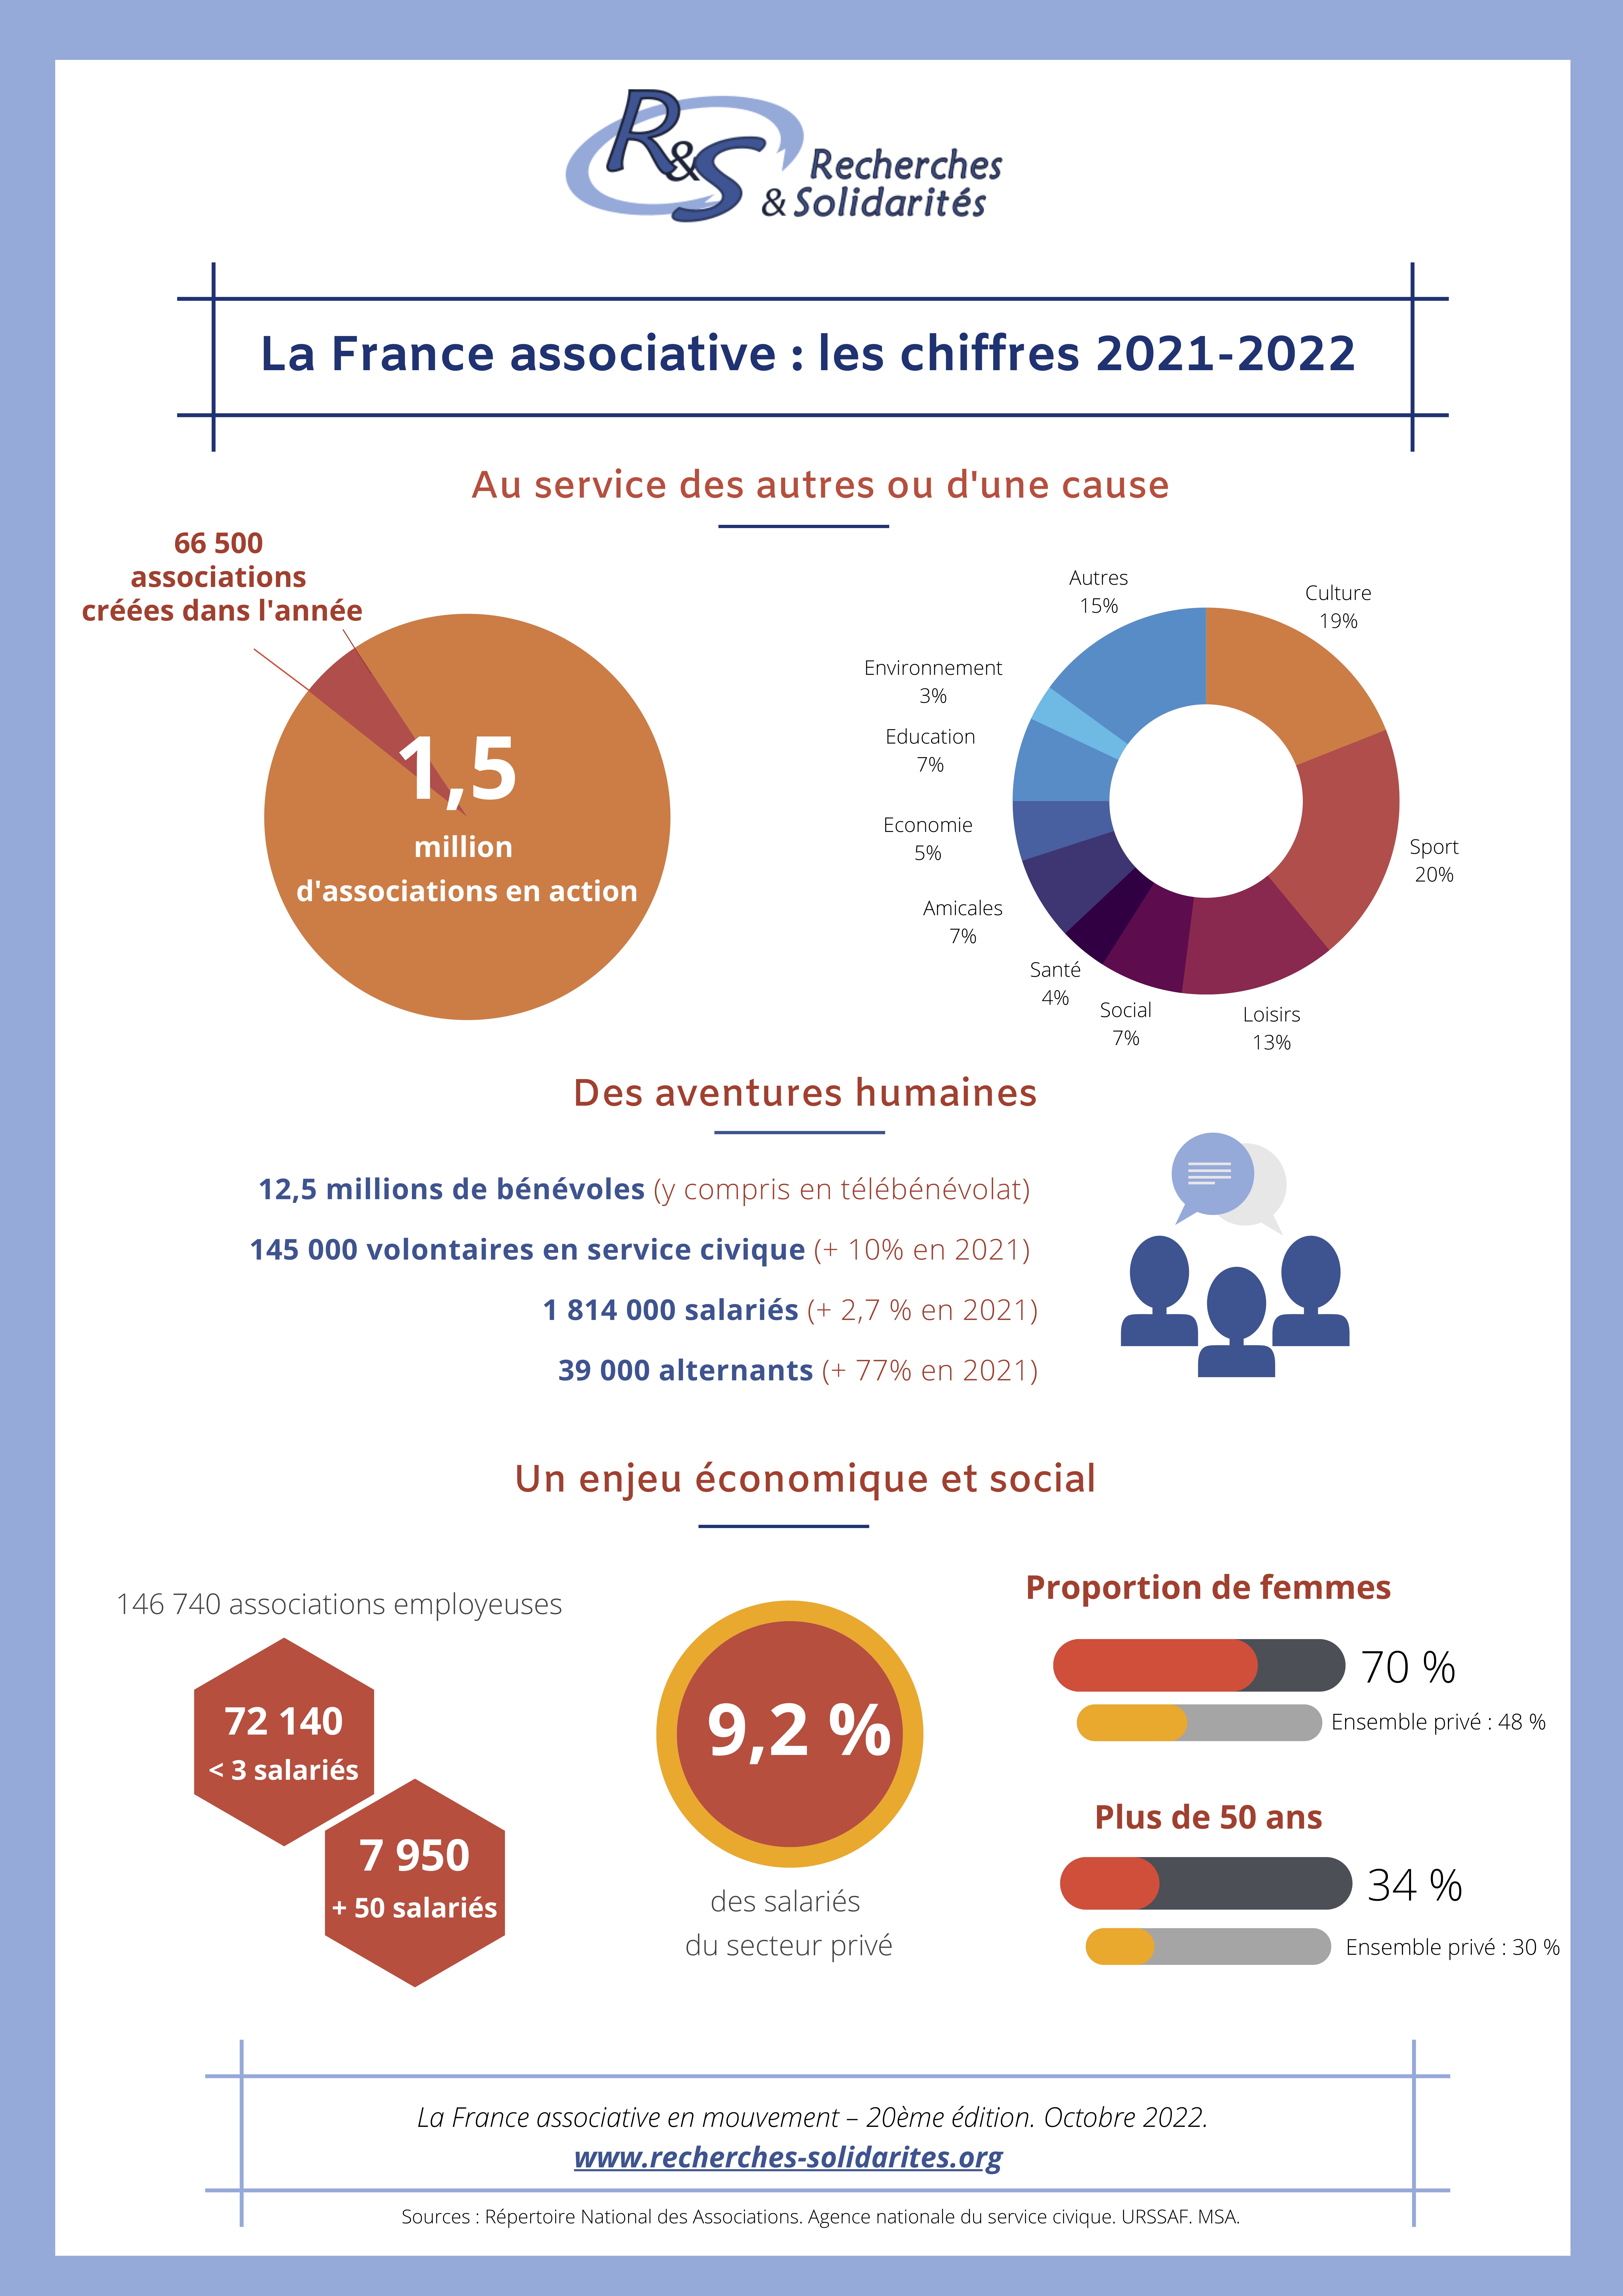 La France associative en mouvement 2022